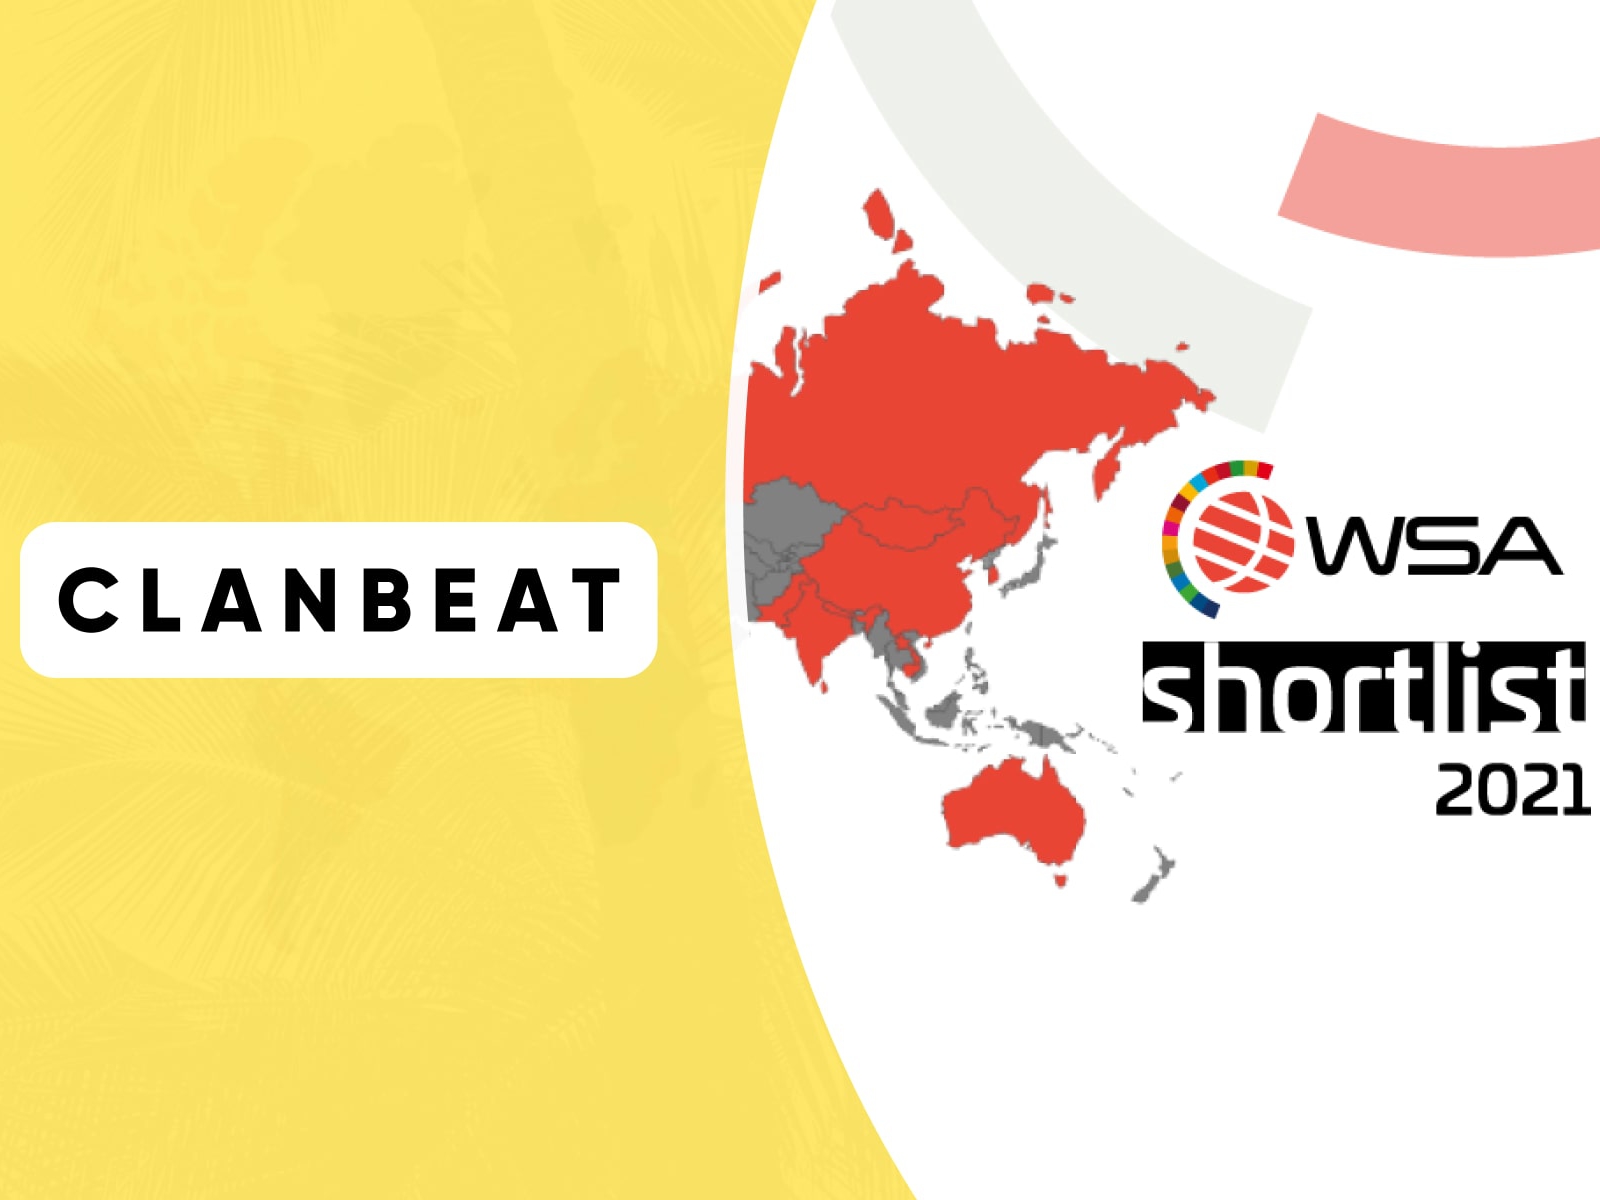 WSA Shortlist-clanbeat